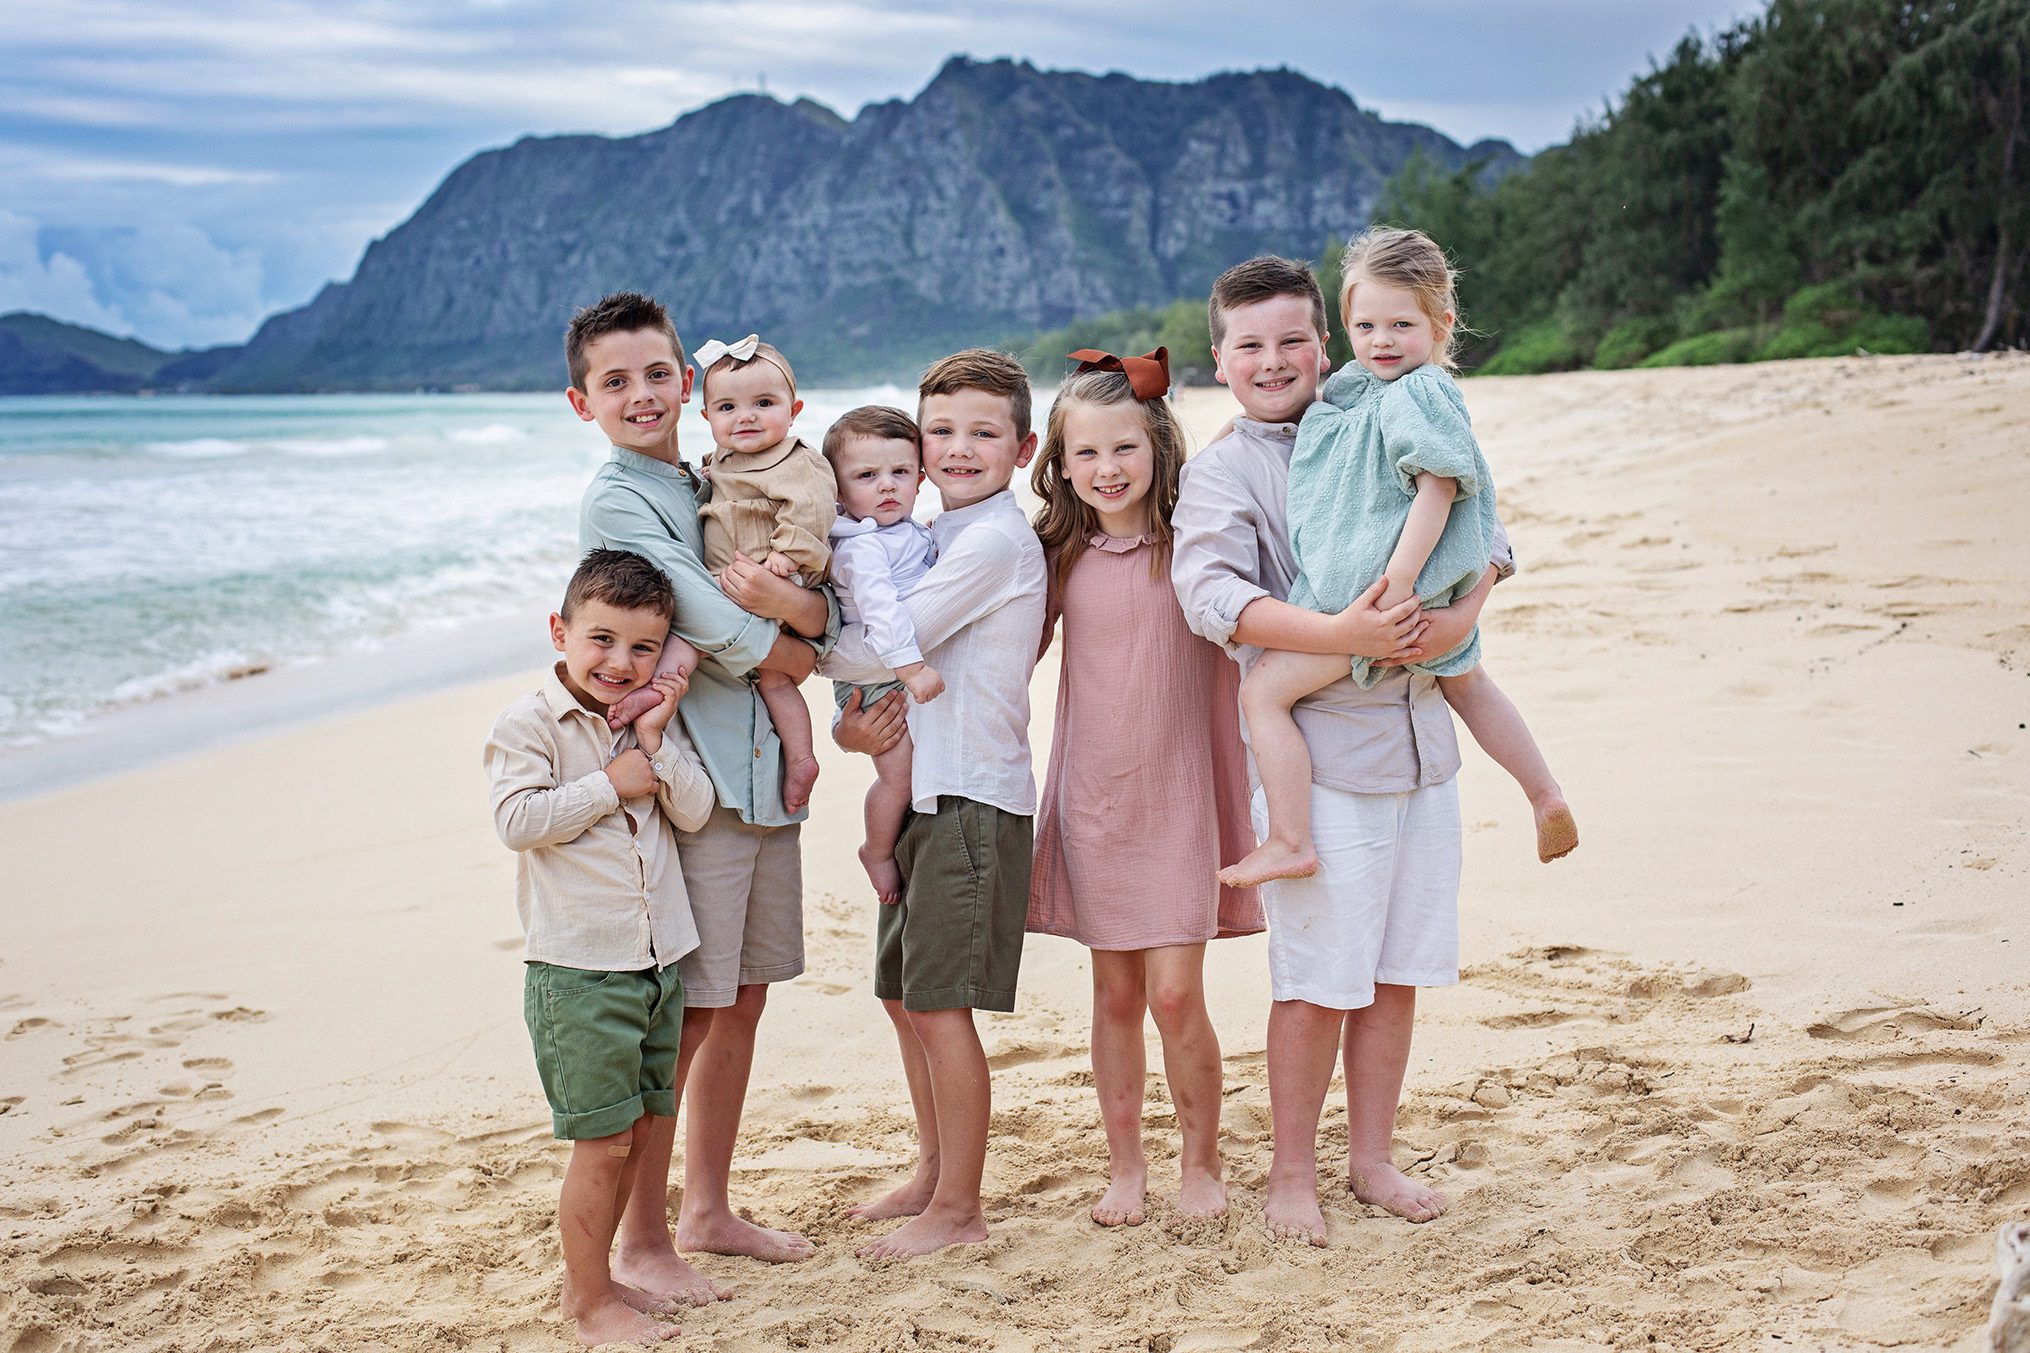 oahu kids photo session on the beach